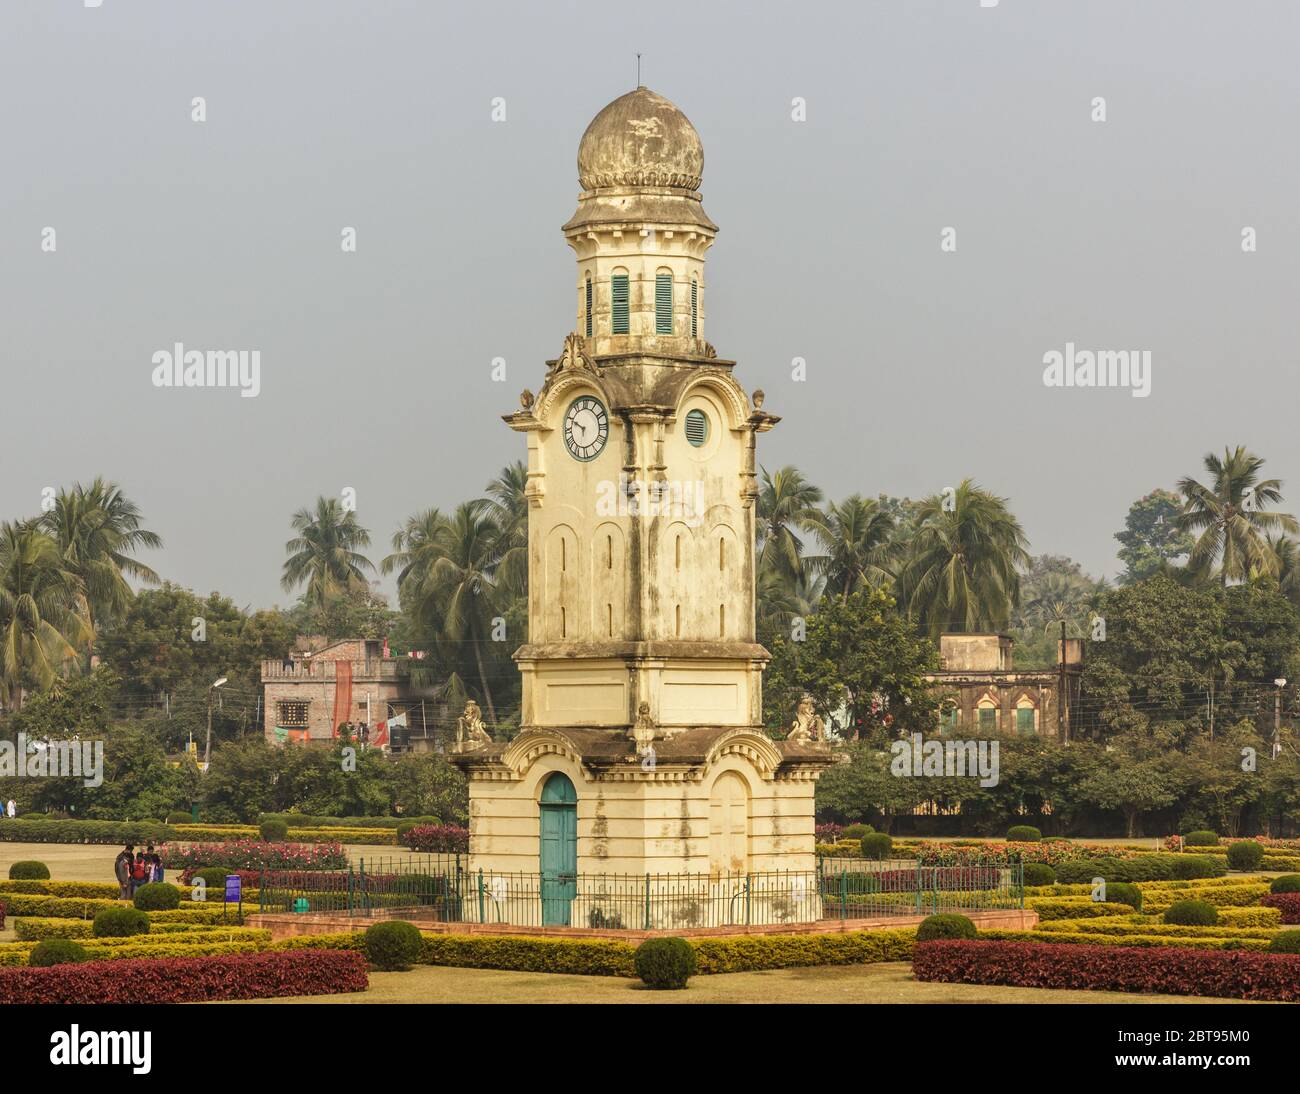 Murshidabad, Westbengalen/Indien - Januar 15 2018: Der Murshidabad Uhrenturm alias Ghari Ghar in den Gärten des Nizamat Imambara. Stockfoto